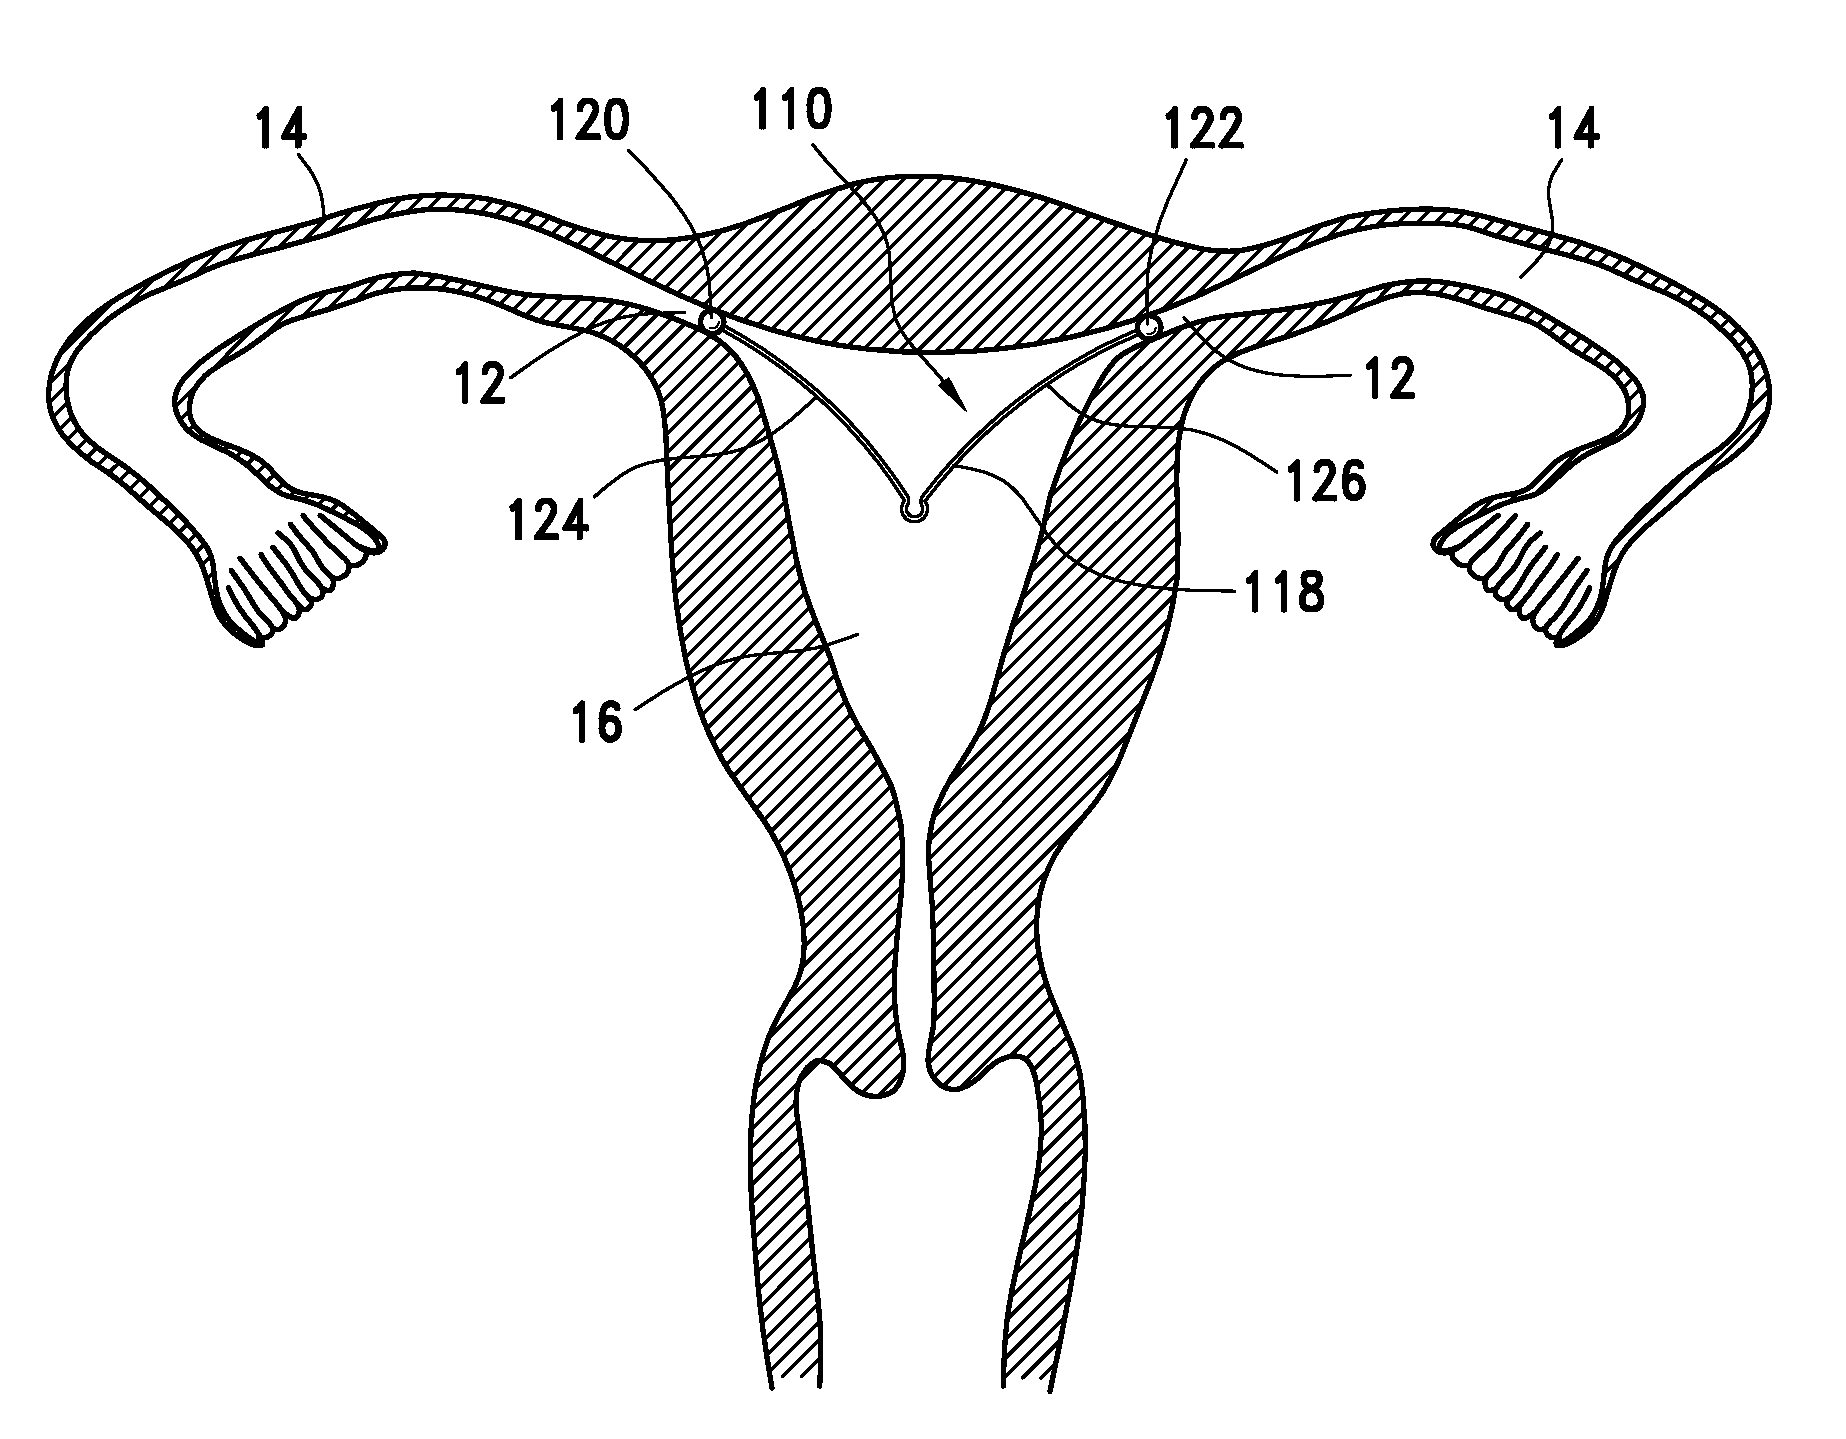 Intrauterine fallopian tube occlusion device